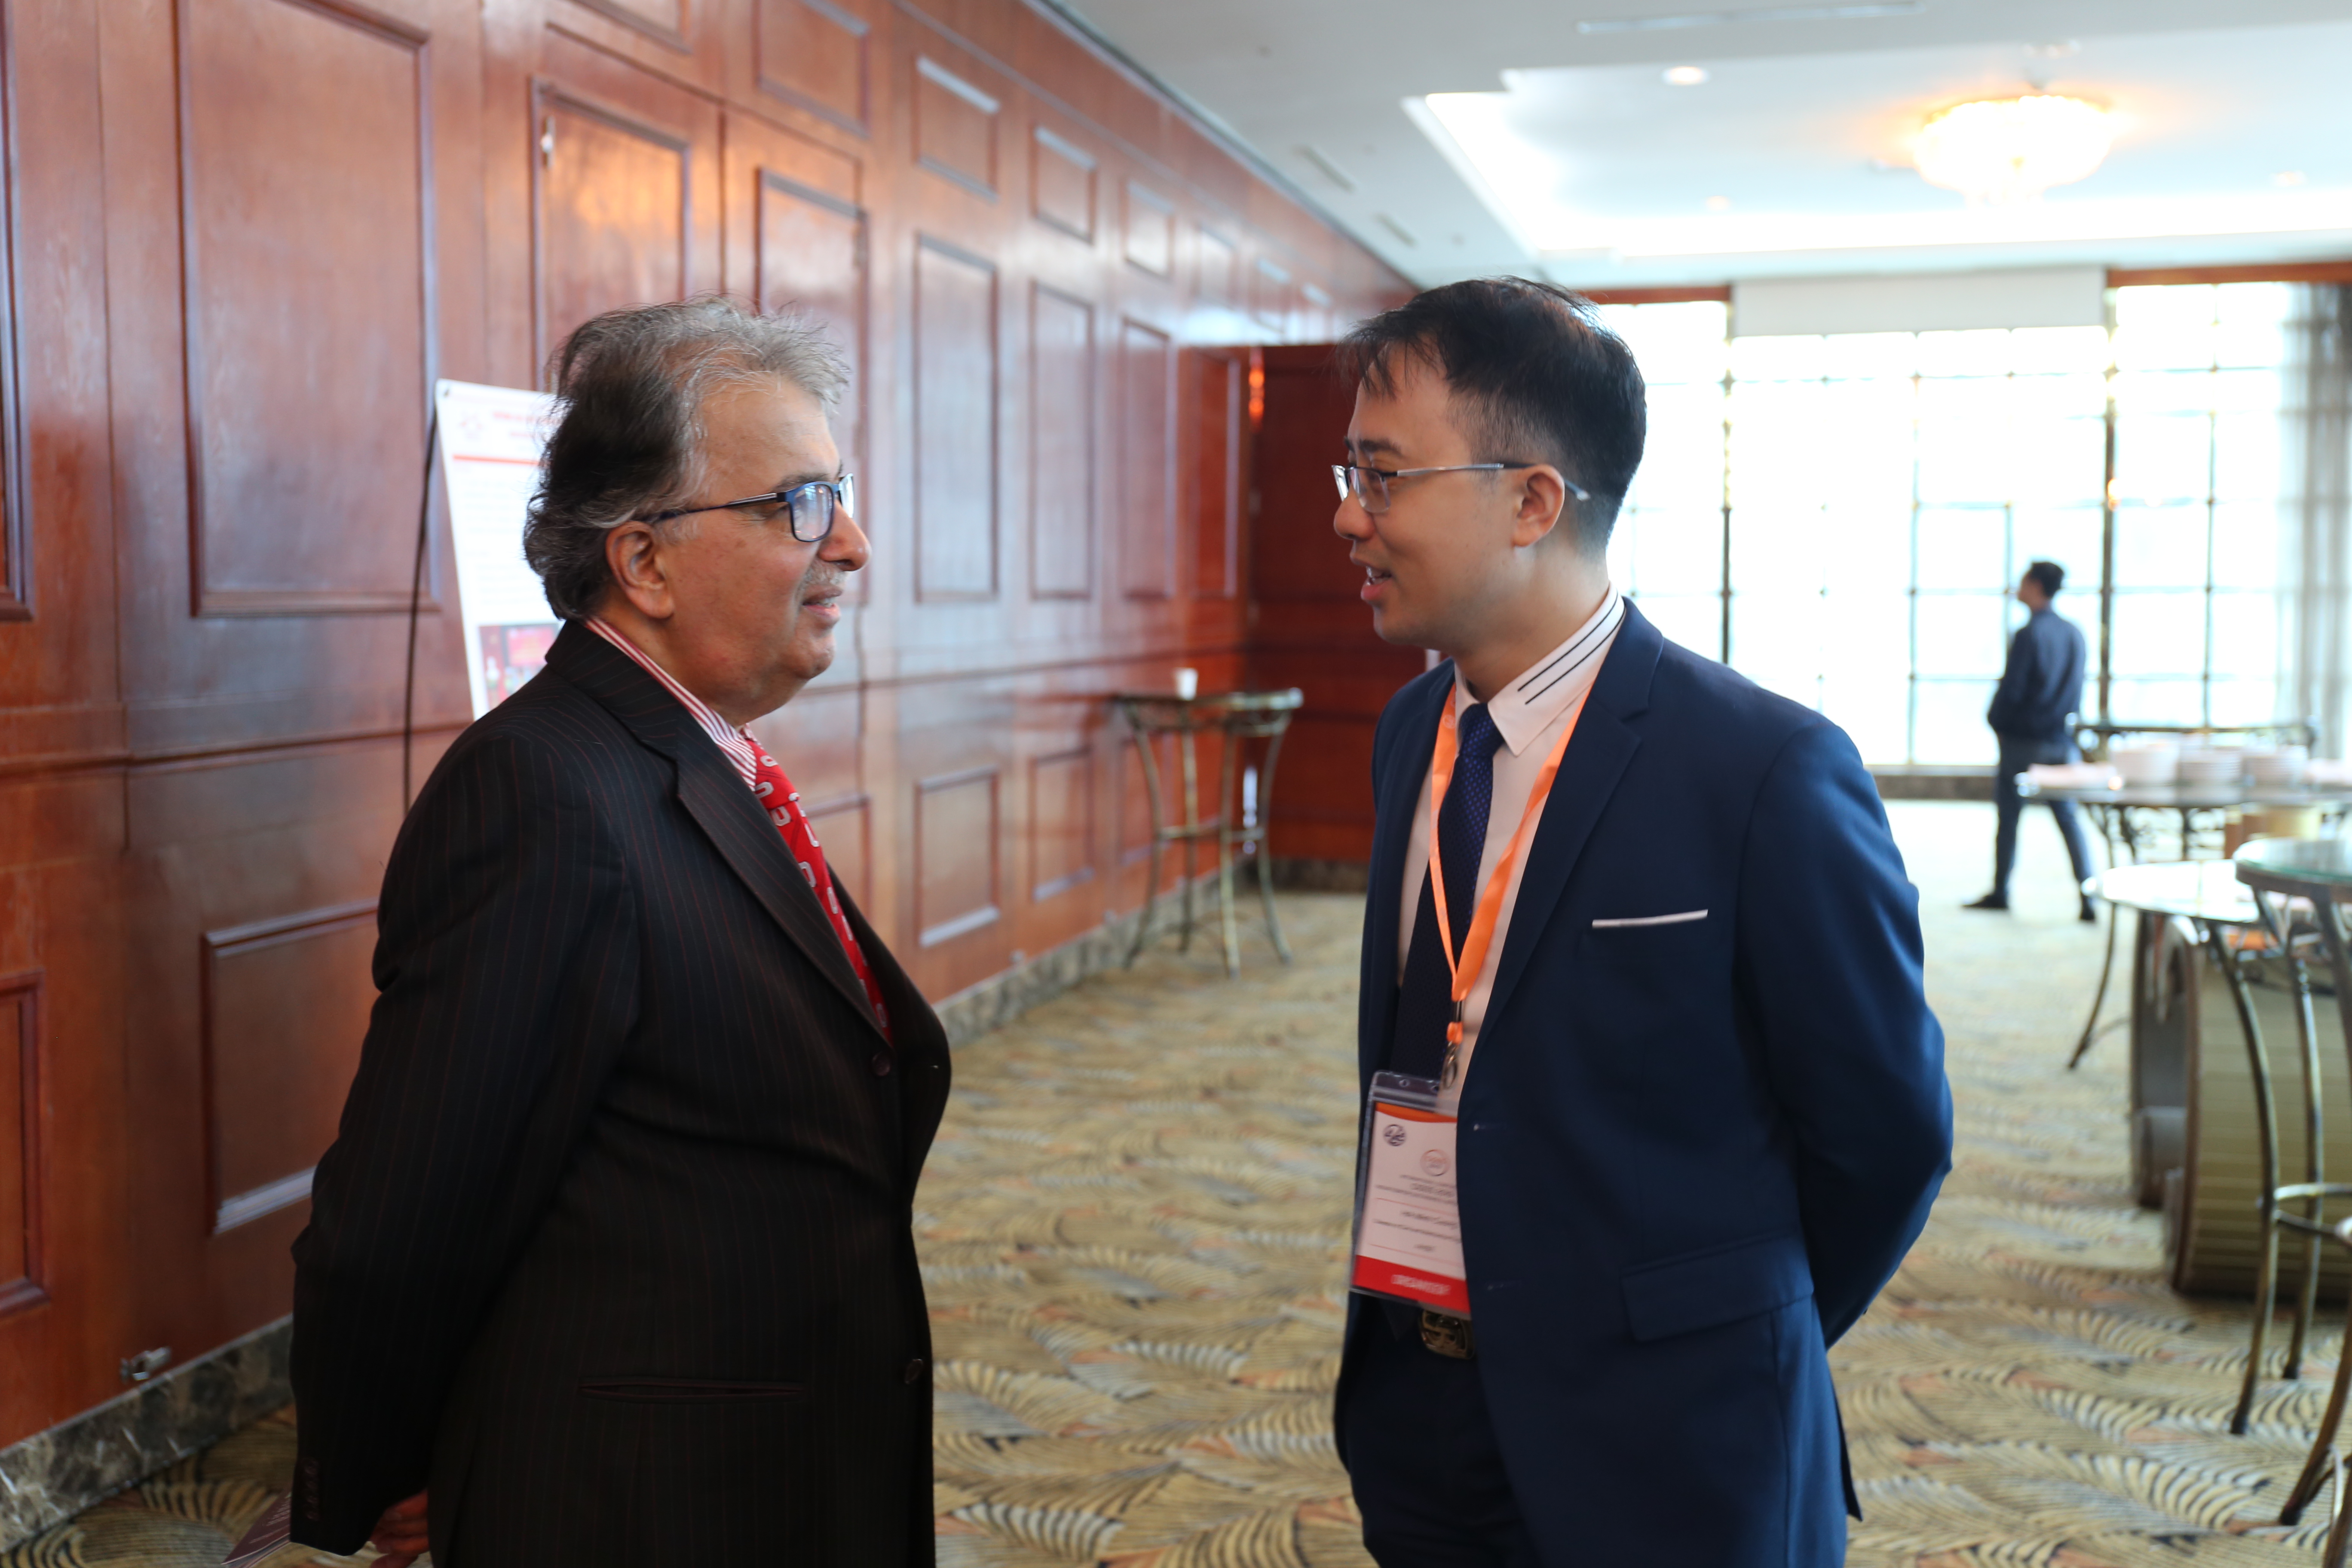 GS. TS. Hojjat Adeli (trái) và PGS.TS. Hà Minh Cường (phải) trao đổi bên lề hội thảo CIGOS 2019 | Ảnh: Ngô Hà